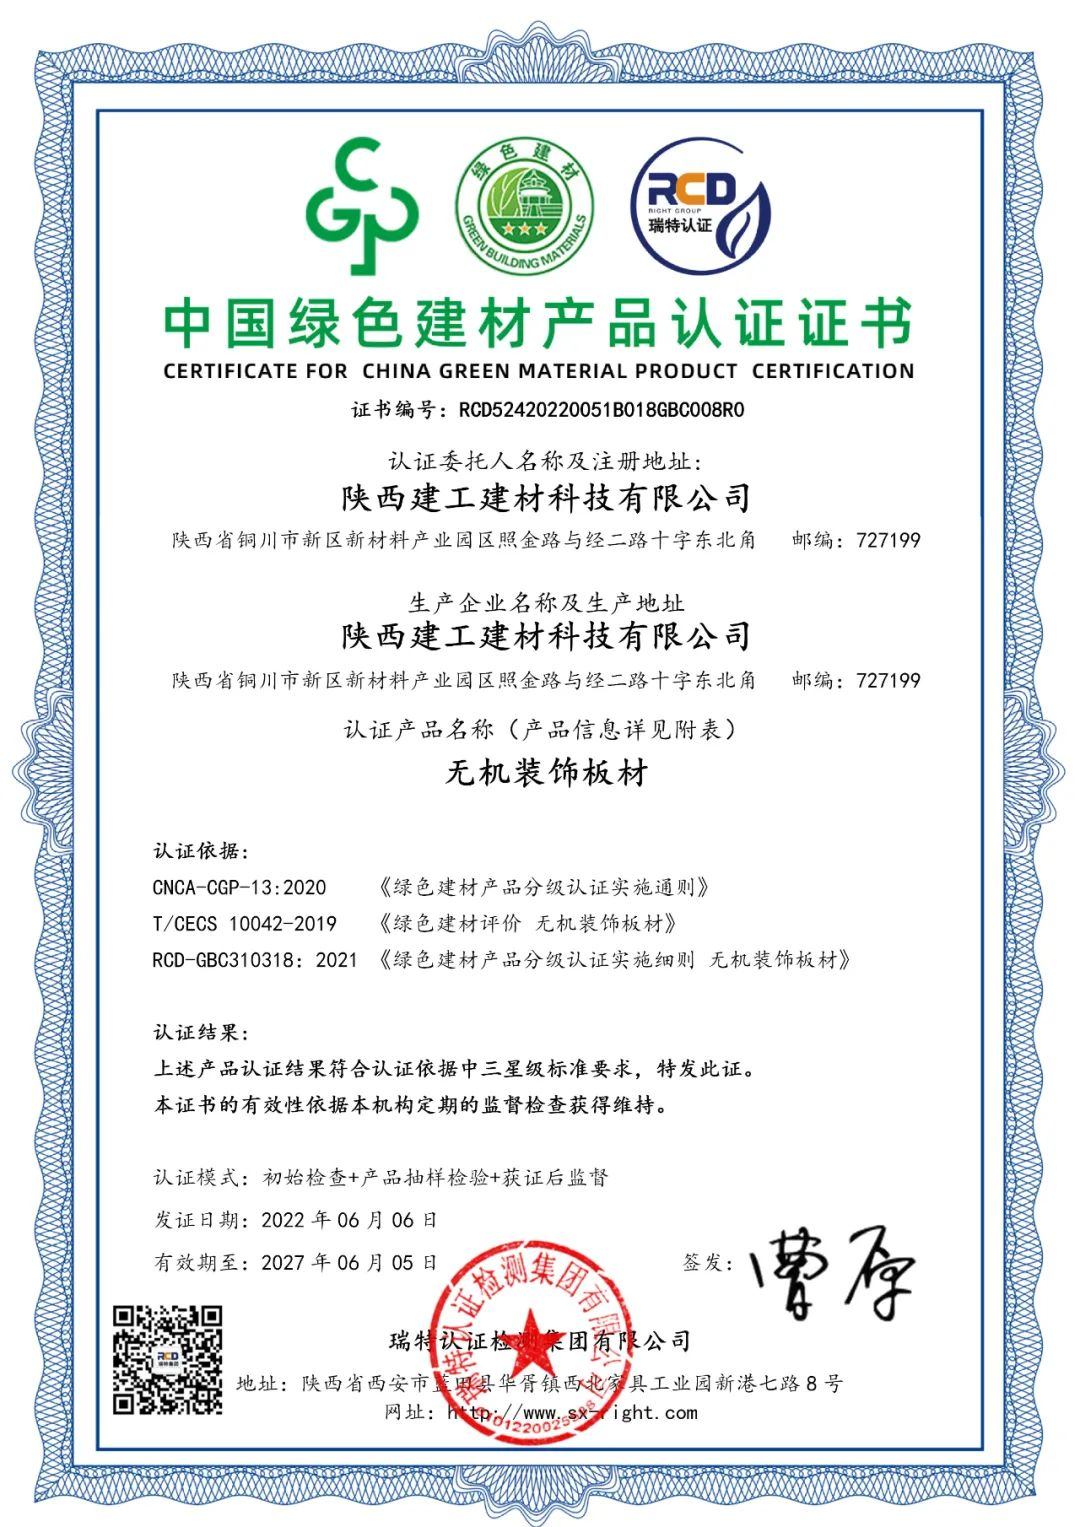 陕建建材科技公司产品成功通过中国绿色建材产品最高级别认证